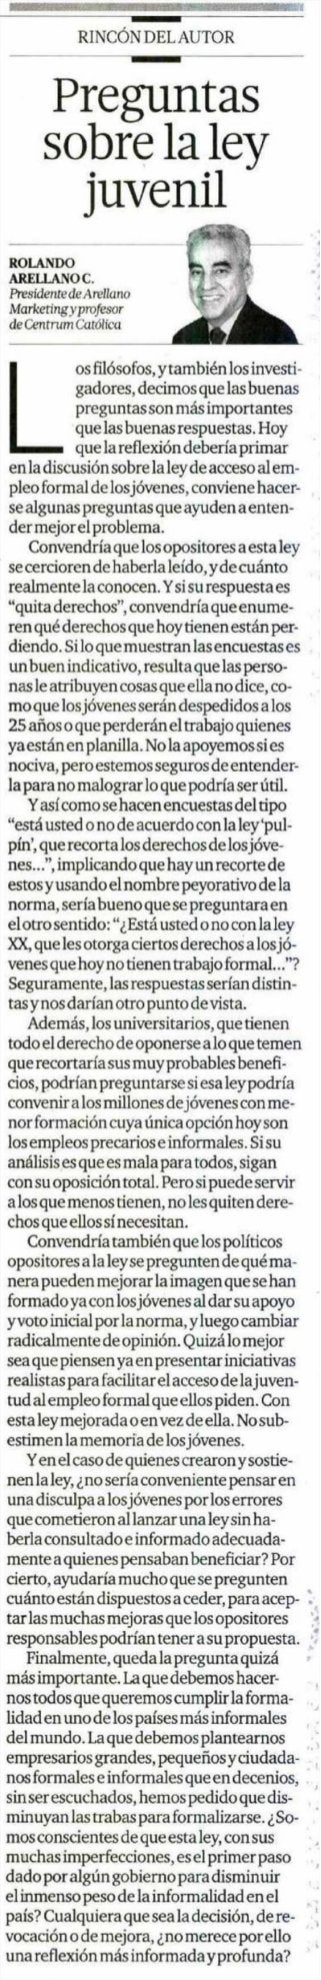 Publicado 26/01/2014 | Artículo Rolando Arellano | El Comercio | CENTRUM Católica